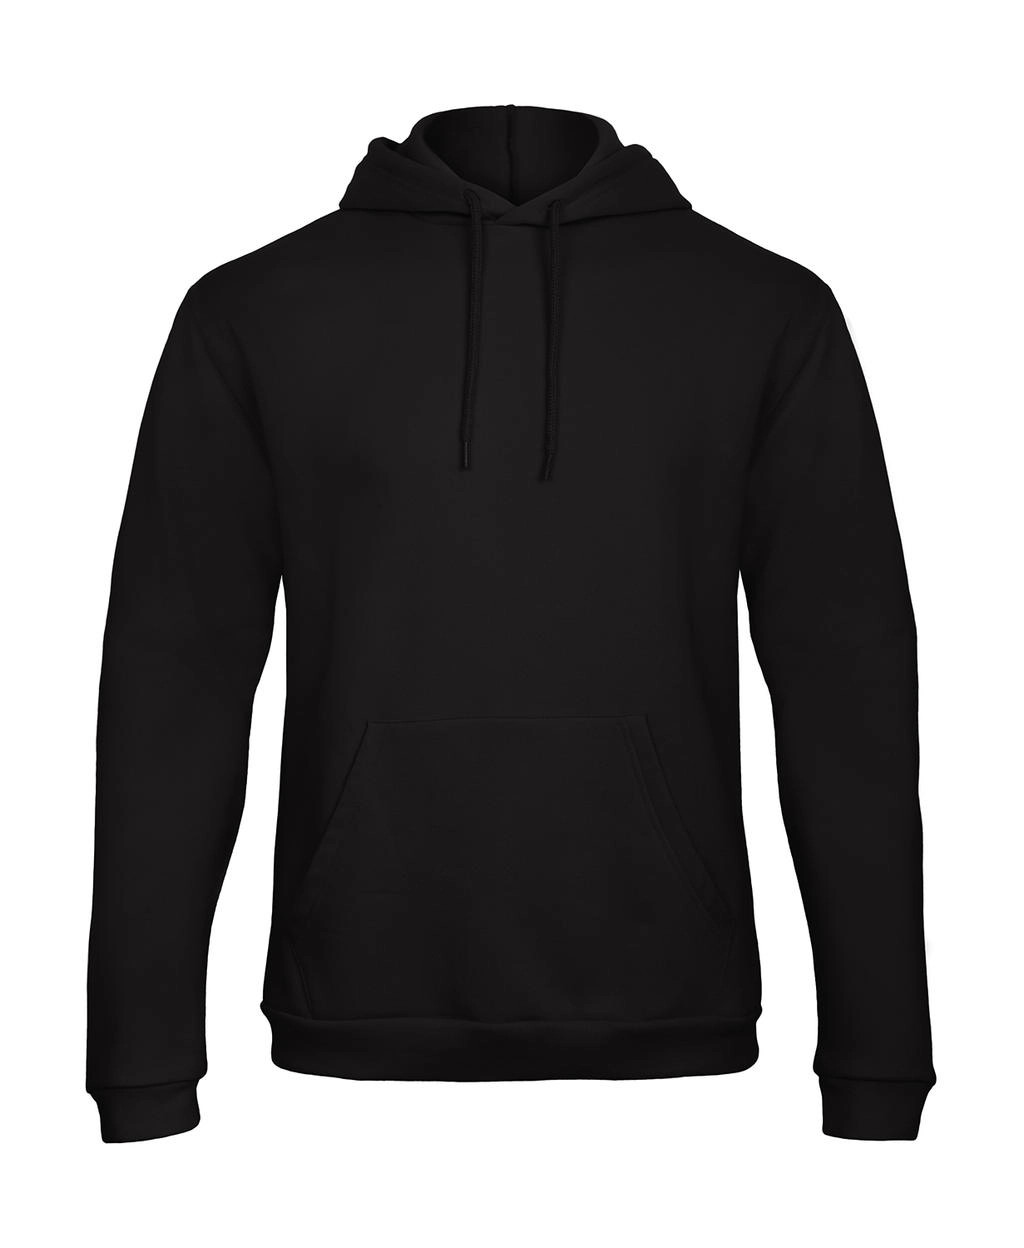 ID.203 50/50 Hooded Sweatshirt Unisex  zum Besticken und Bedrucken in der Farbe Black mit Ihren Logo, Schriftzug oder Motiv.